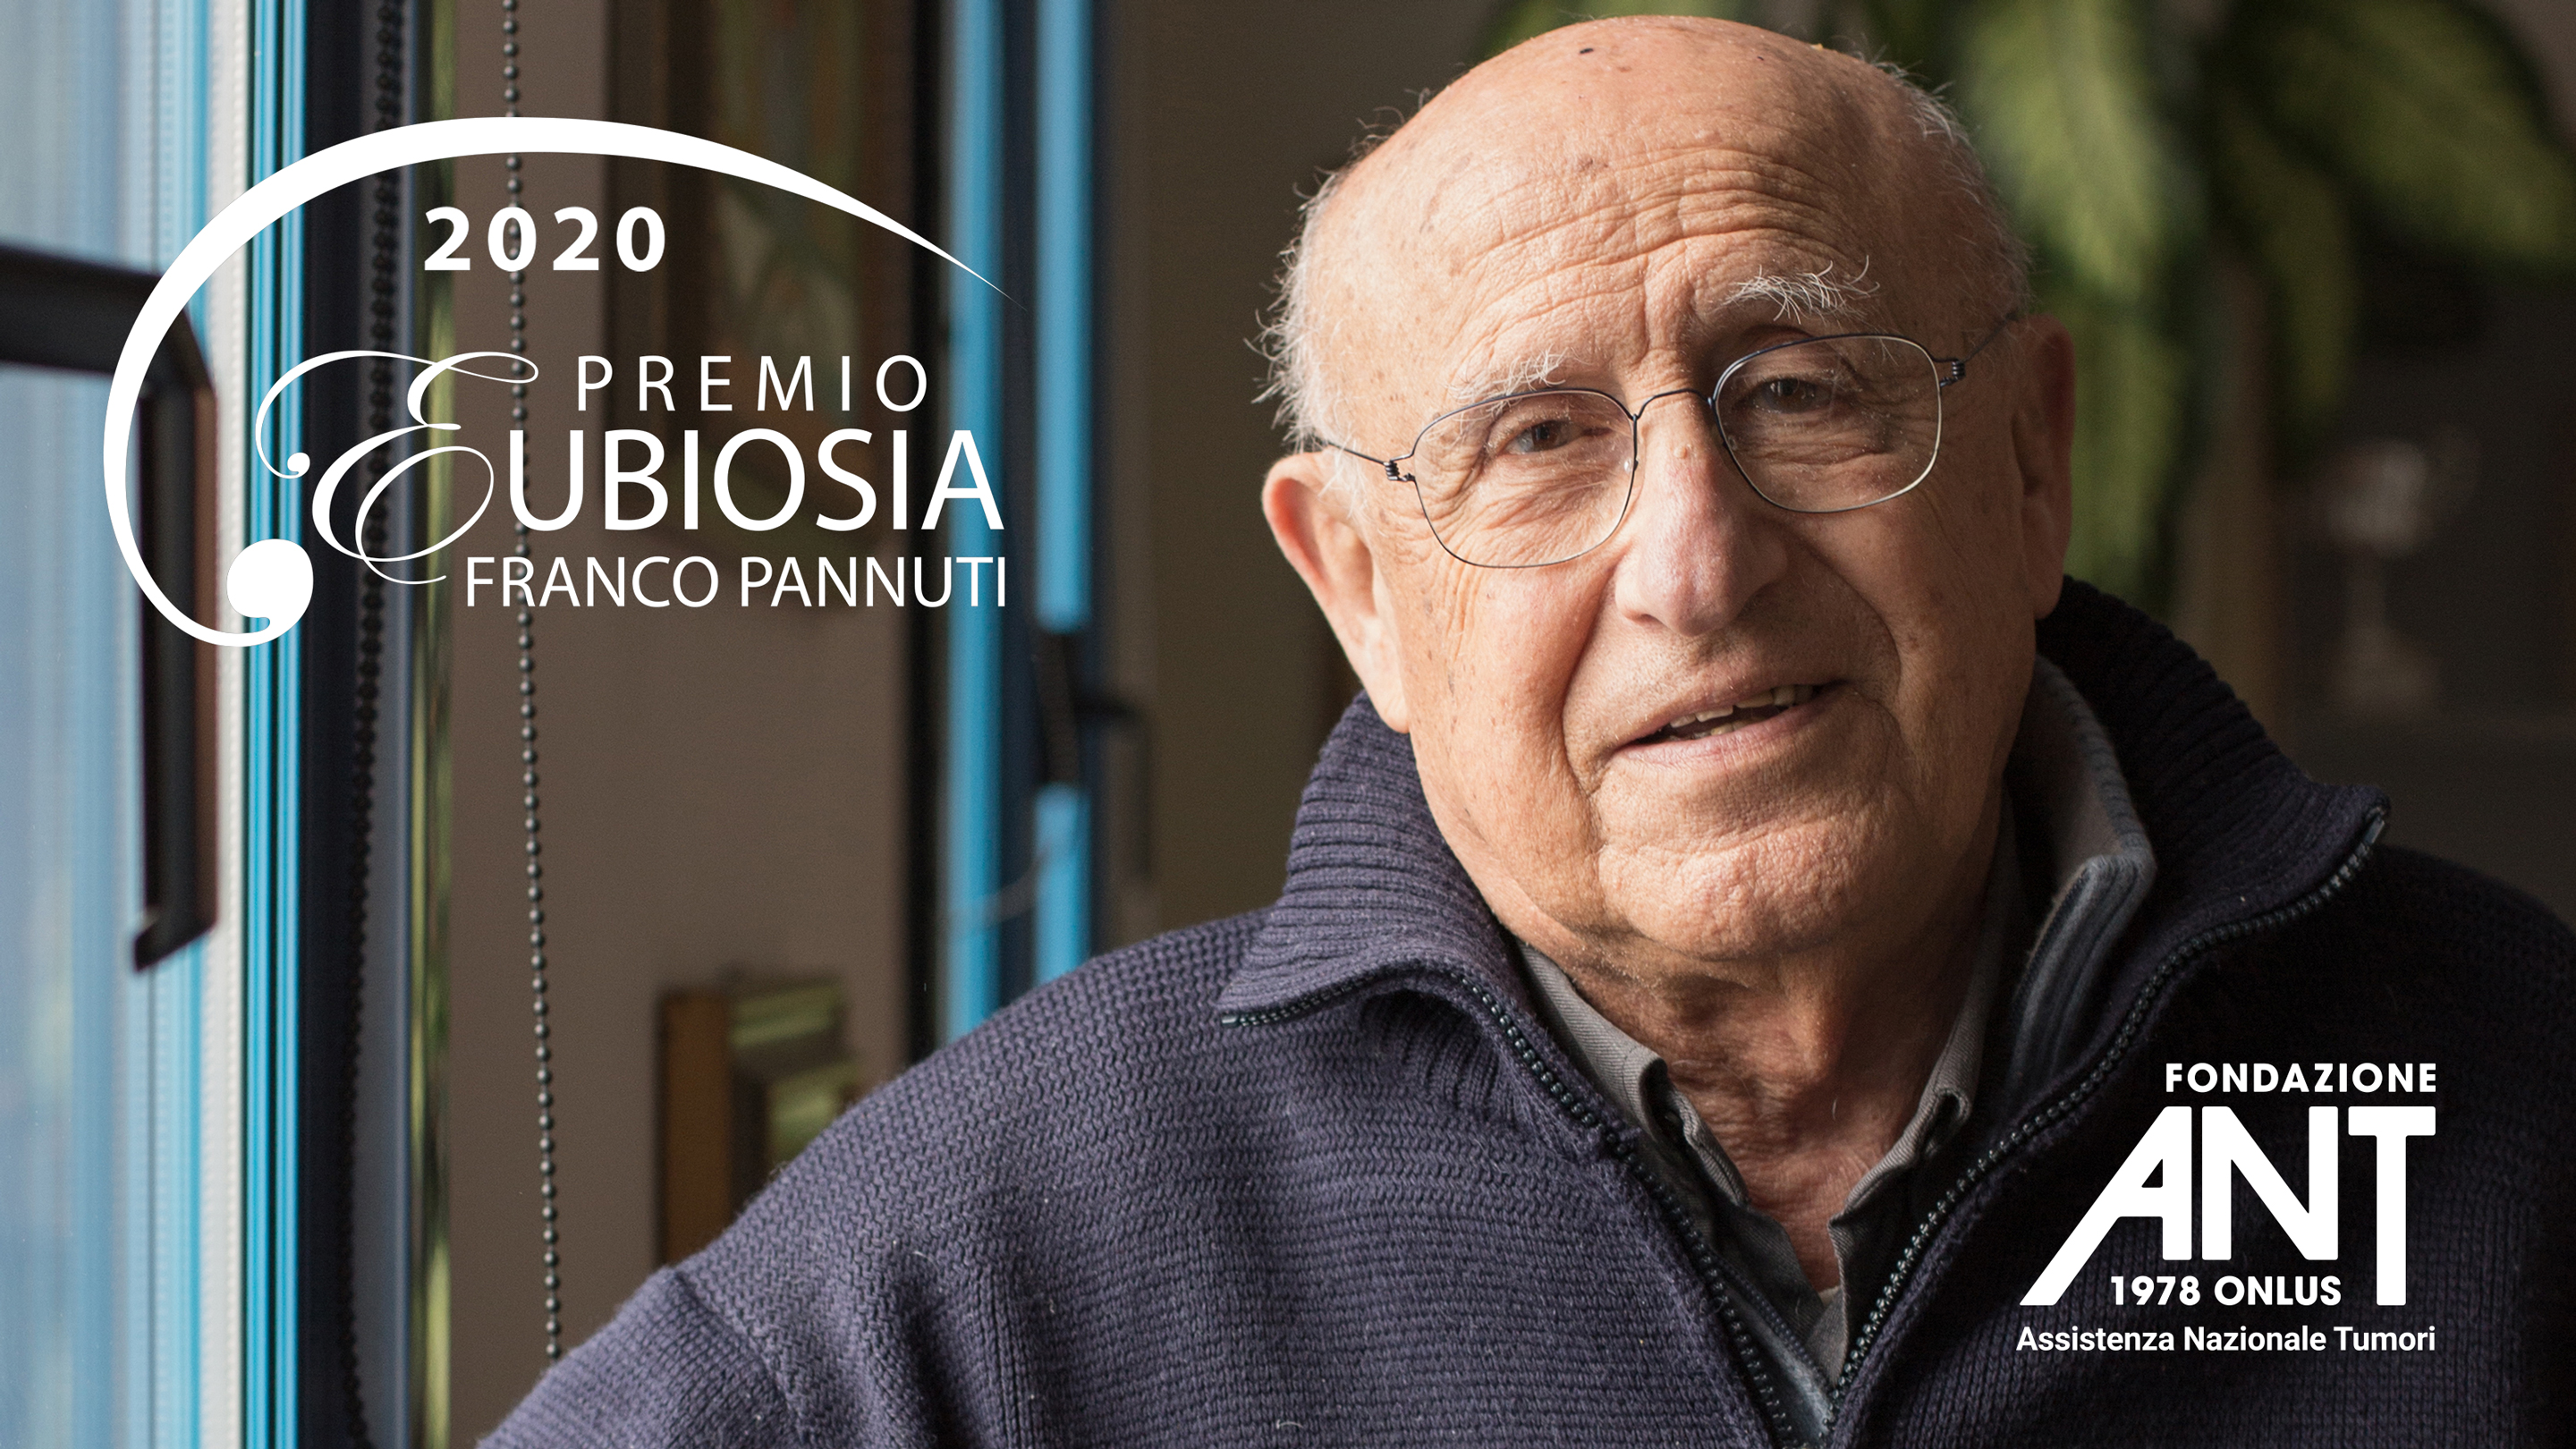 ANT assegna alla Esso Italiana il Premio Eubiosia Franco Pannuti 2020